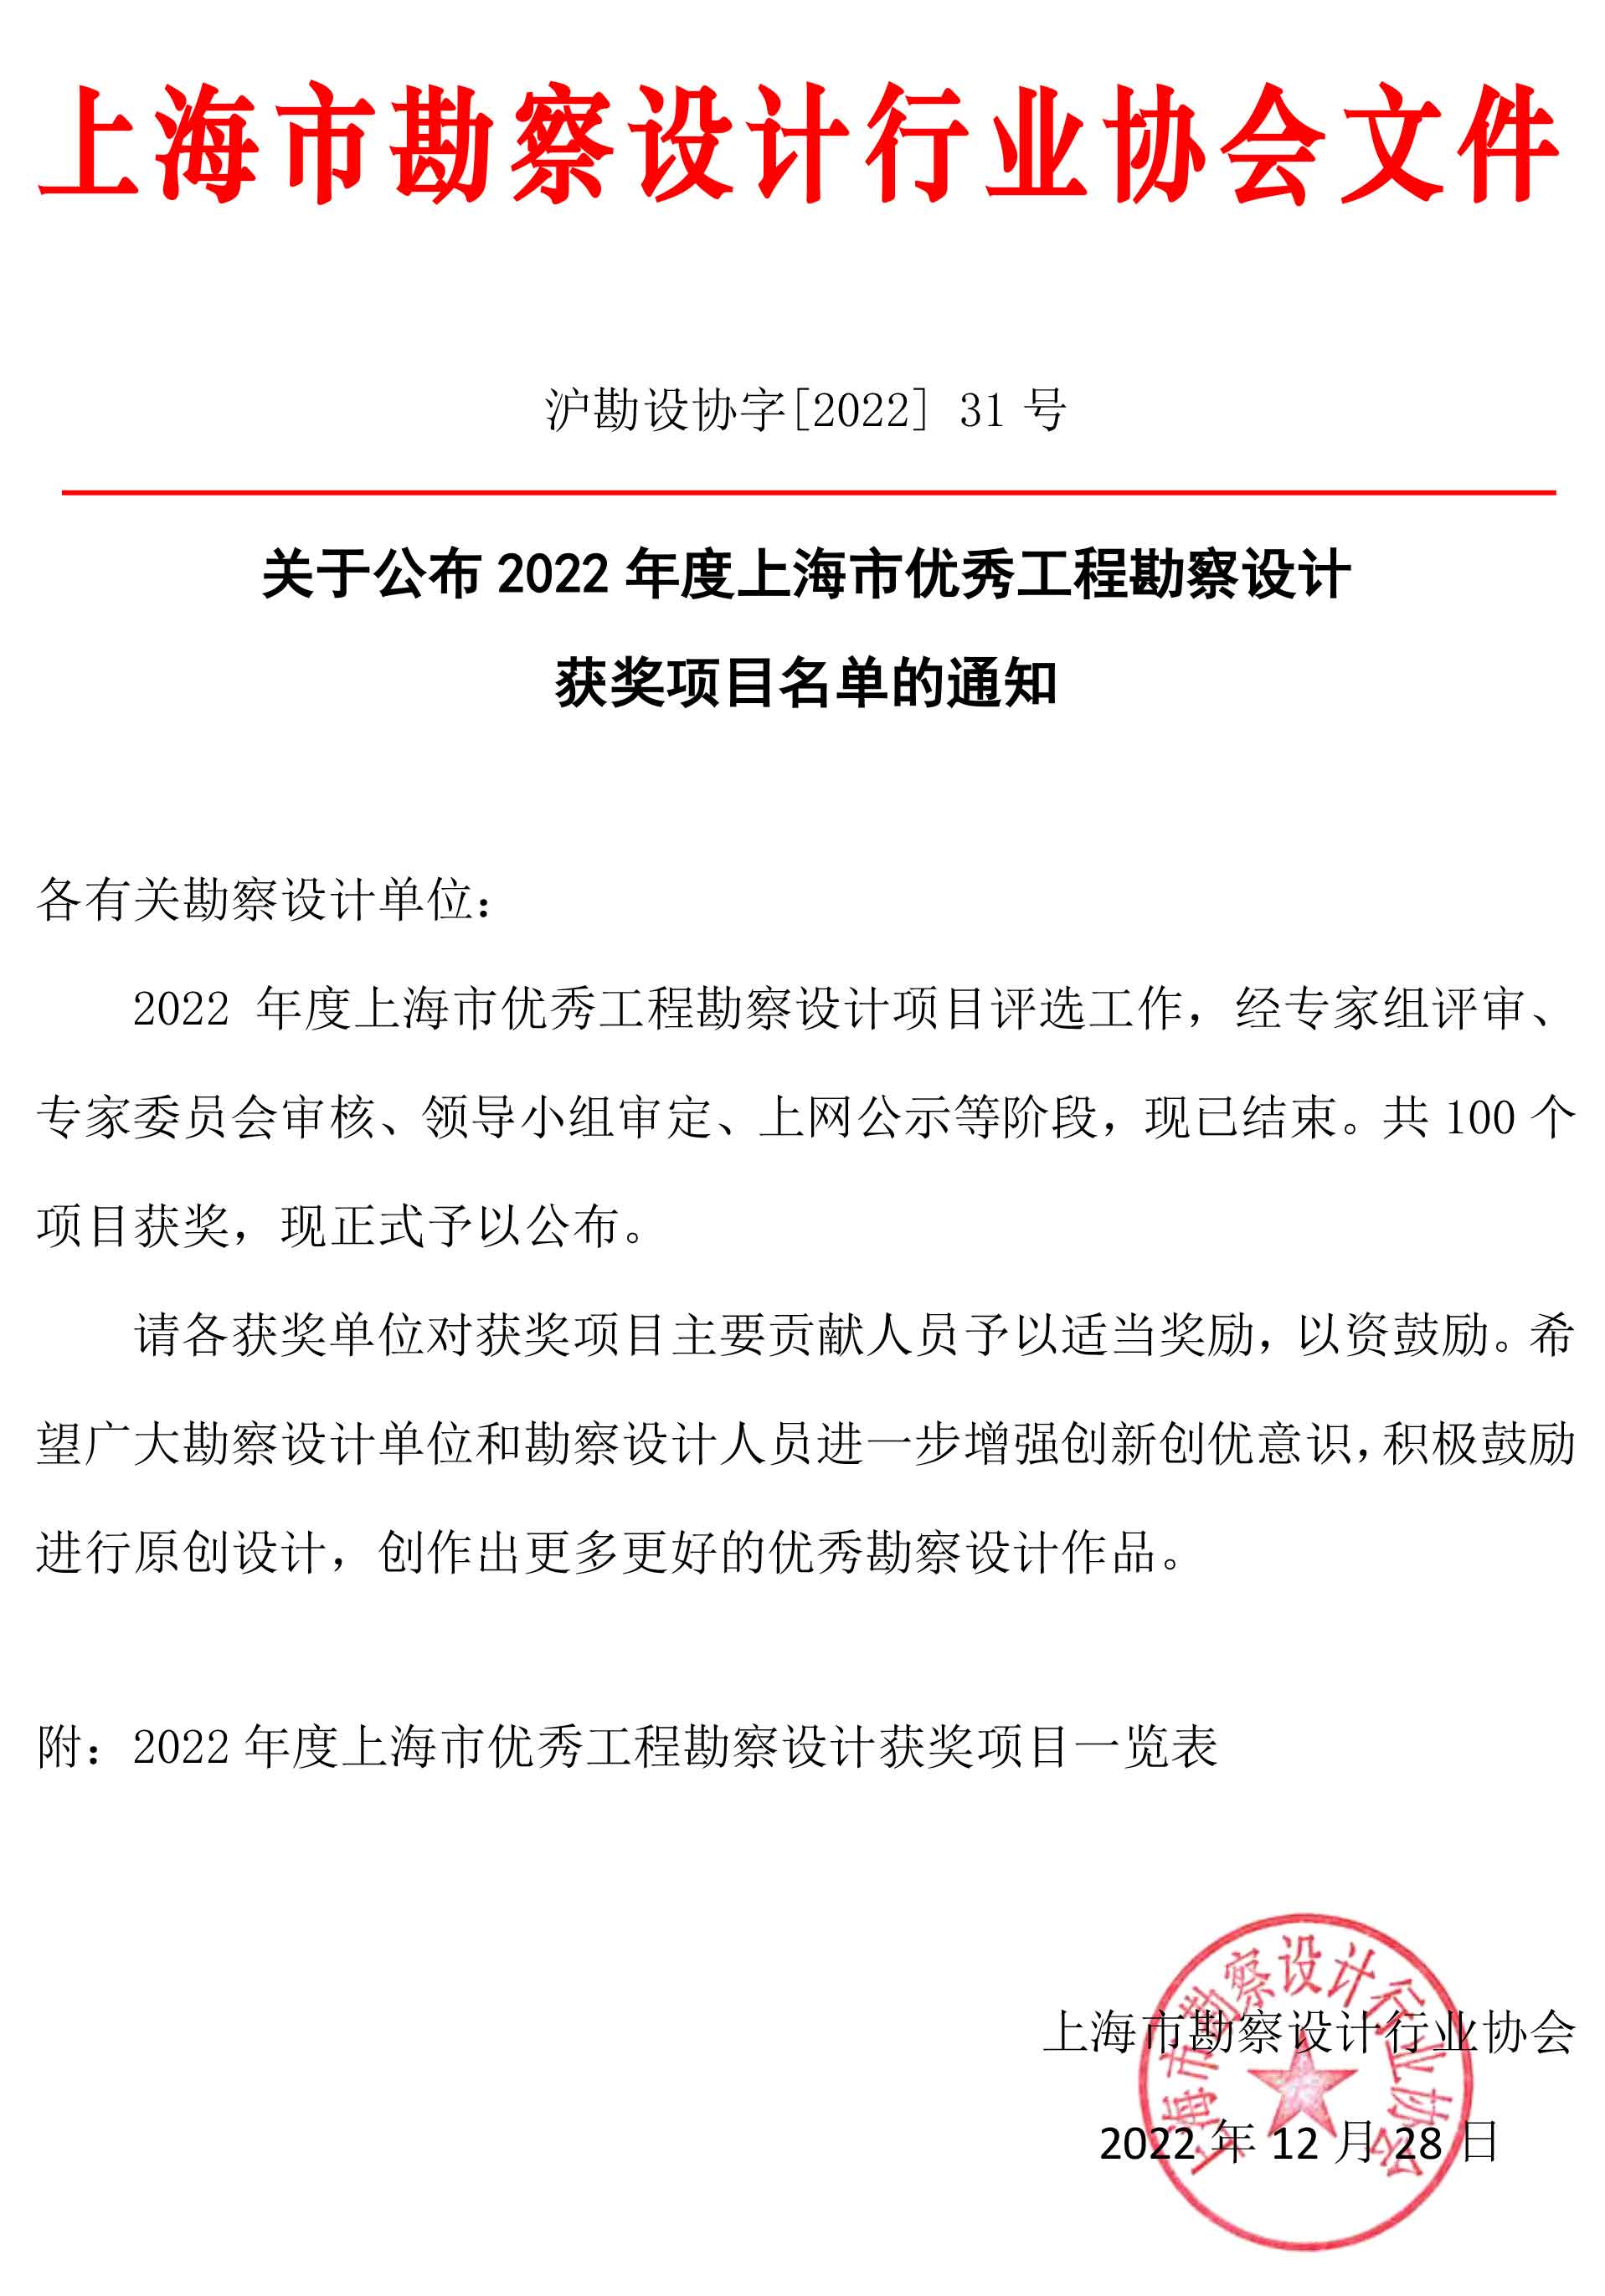 关于公布2022年度上海市优秀工程勘察设计获奖项目名单的通知.jpg